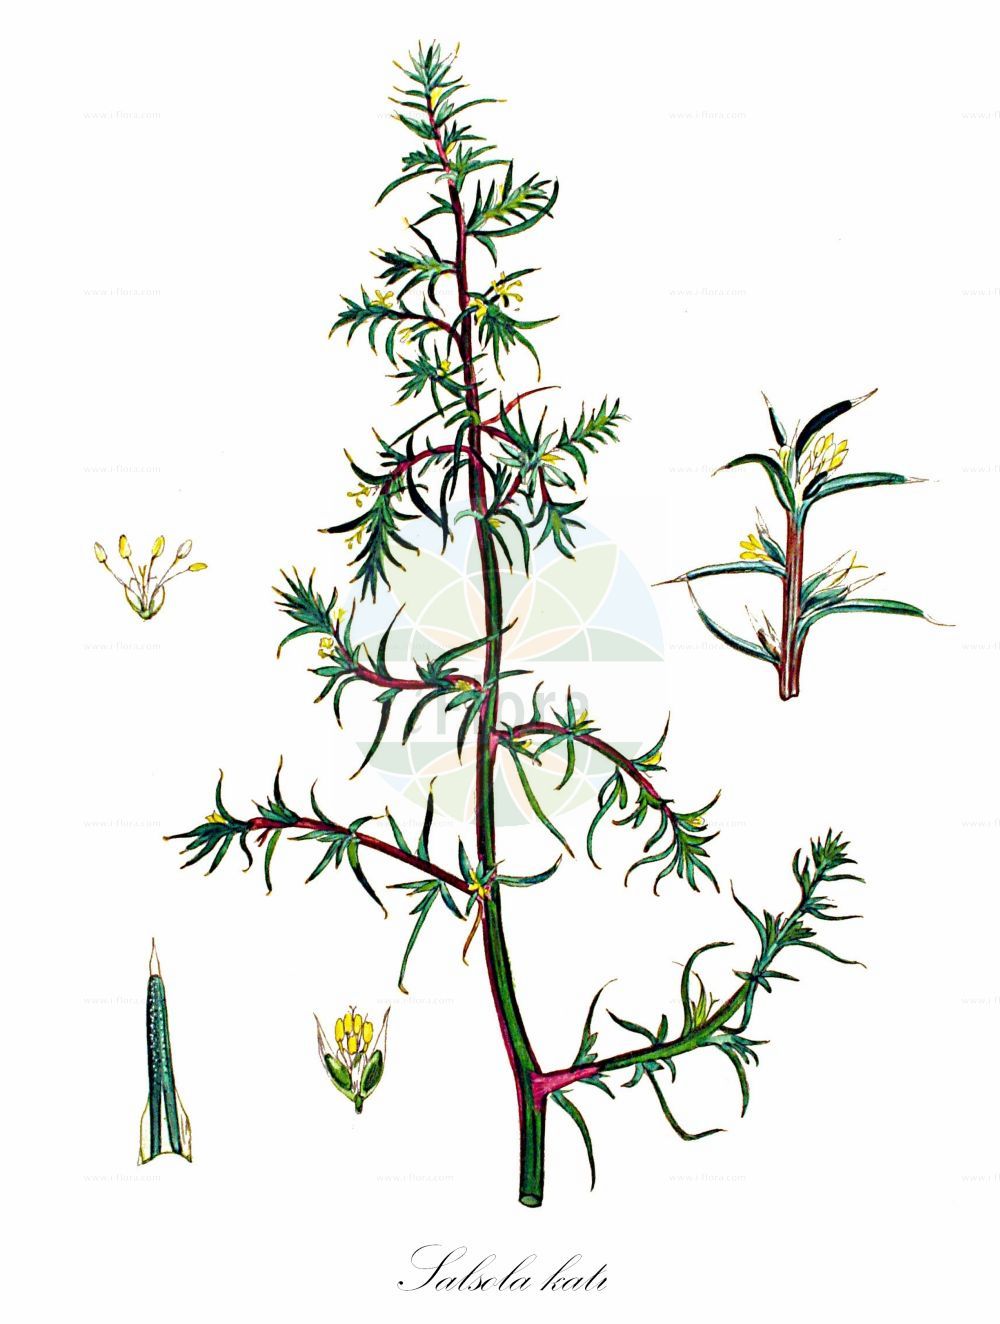 Historische Abbildung von Salsola kali (Gewöhnliches Kali-Salzkraut - Prickly Saltwort). Das Bild zeigt Blatt, Bluete, Frucht und Same. ---- Historical Drawing of Salsola kali (Gewöhnliches Kali-Salzkraut - Prickly Saltwort). The image is showing leaf, flower, fruit and seed.(Salsola kali,Gewöhnliches Kali-Salzkraut,Prickly Saltwort,Kali australis,Salsola kali,Gewoehnliches Kali-Salzkraut,Kuesten-Salzkraut,Ungarisches Salzkraut,Prickly Saltwort,Prickly Glasswort,Slender Russian Thistle,Prickly Russian Thistle,Roly-poly,Russian Thistle,Spiny Saltwort,Salsola,Salzkraut,Russian Thistle,Amaranthaceae,Fuchsschwanzgewächse,Pigweed family,Blatt,Bluete,Frucht,Same,leaf,flower,fruit,seed,Kops (1800-1934))